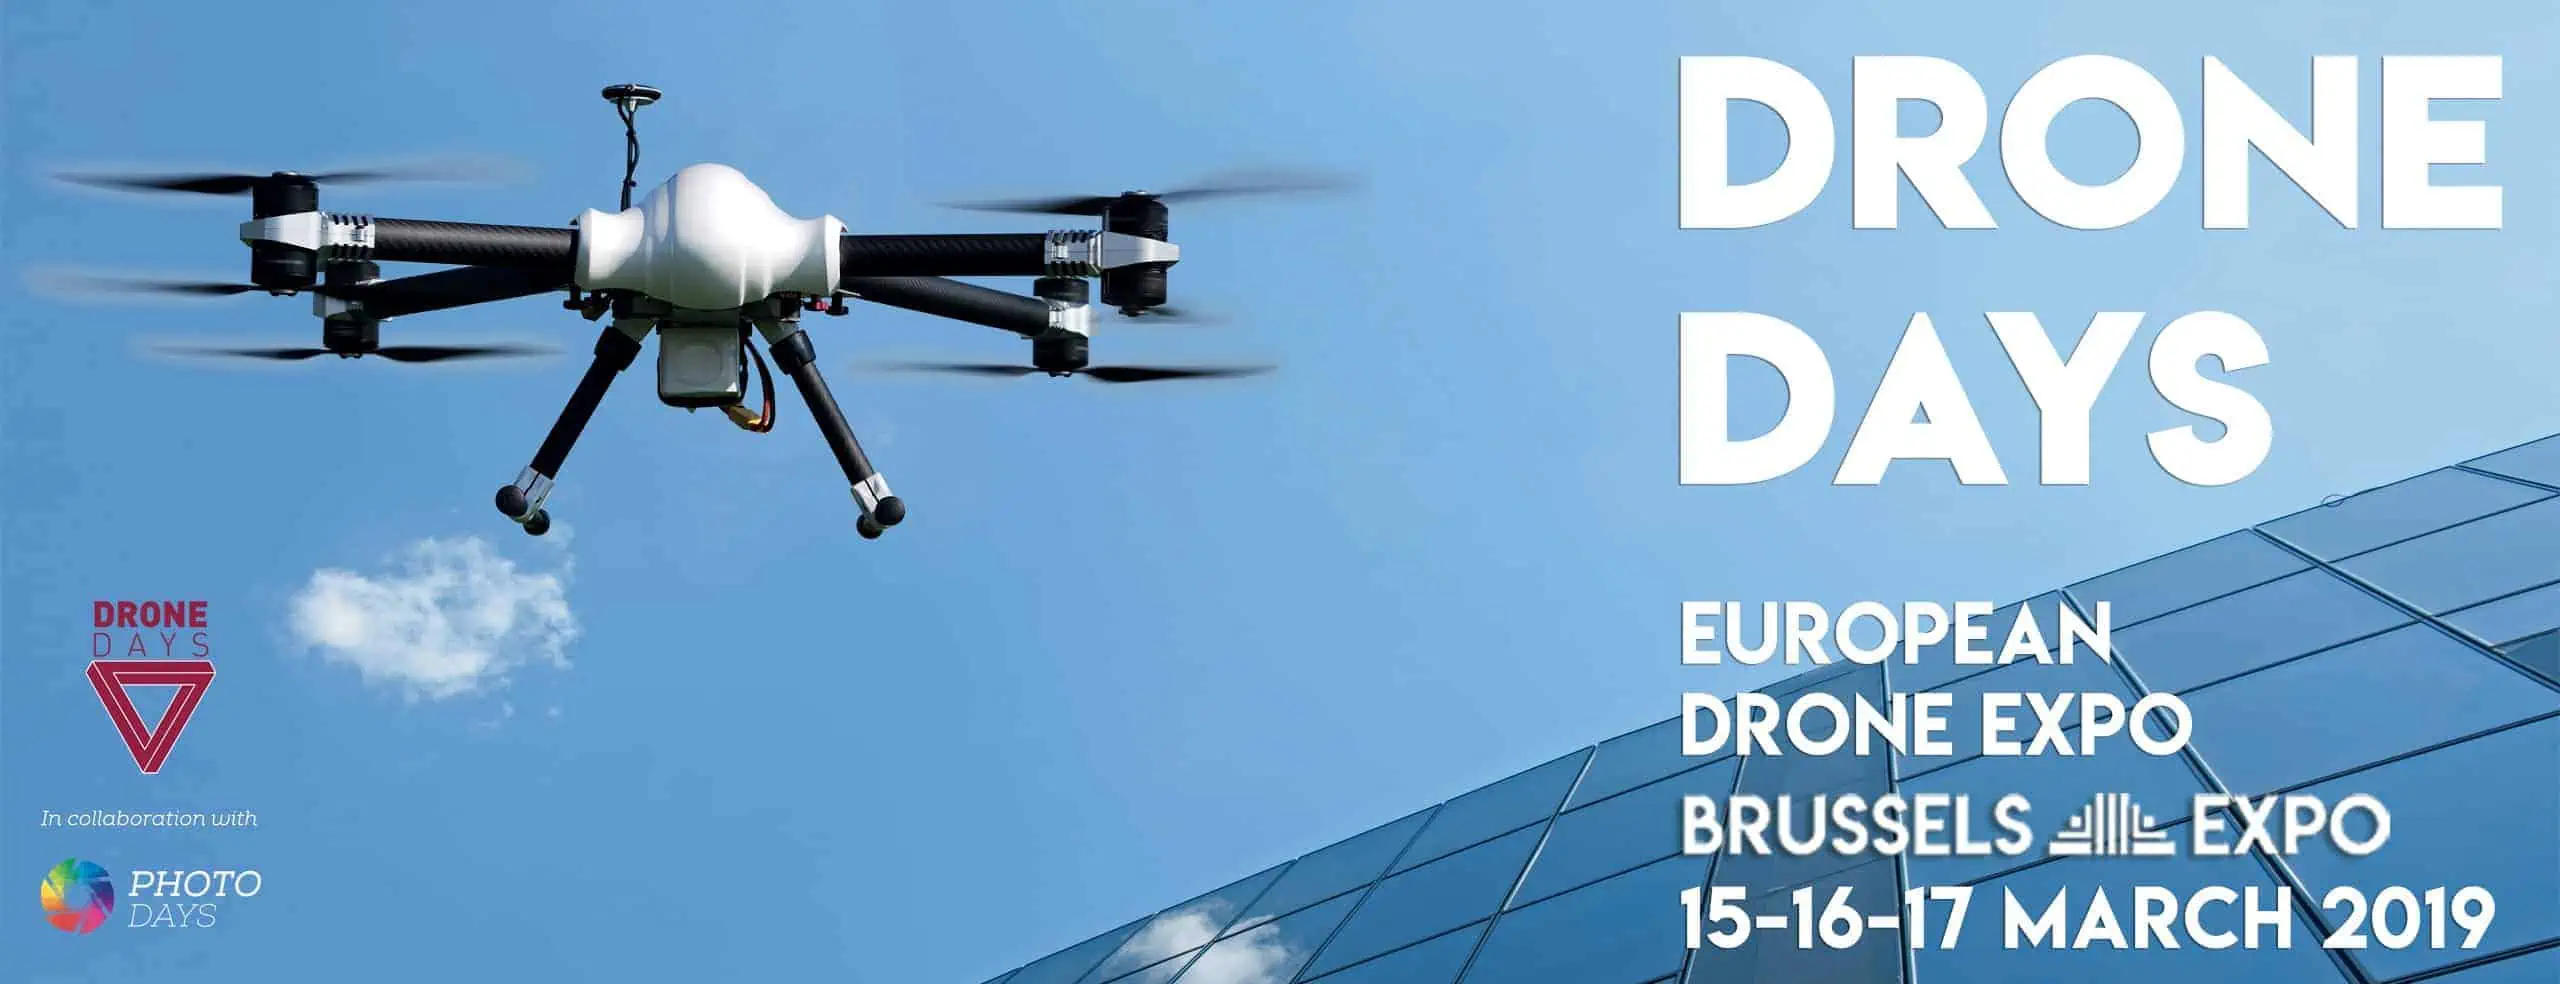 European Drone Expo